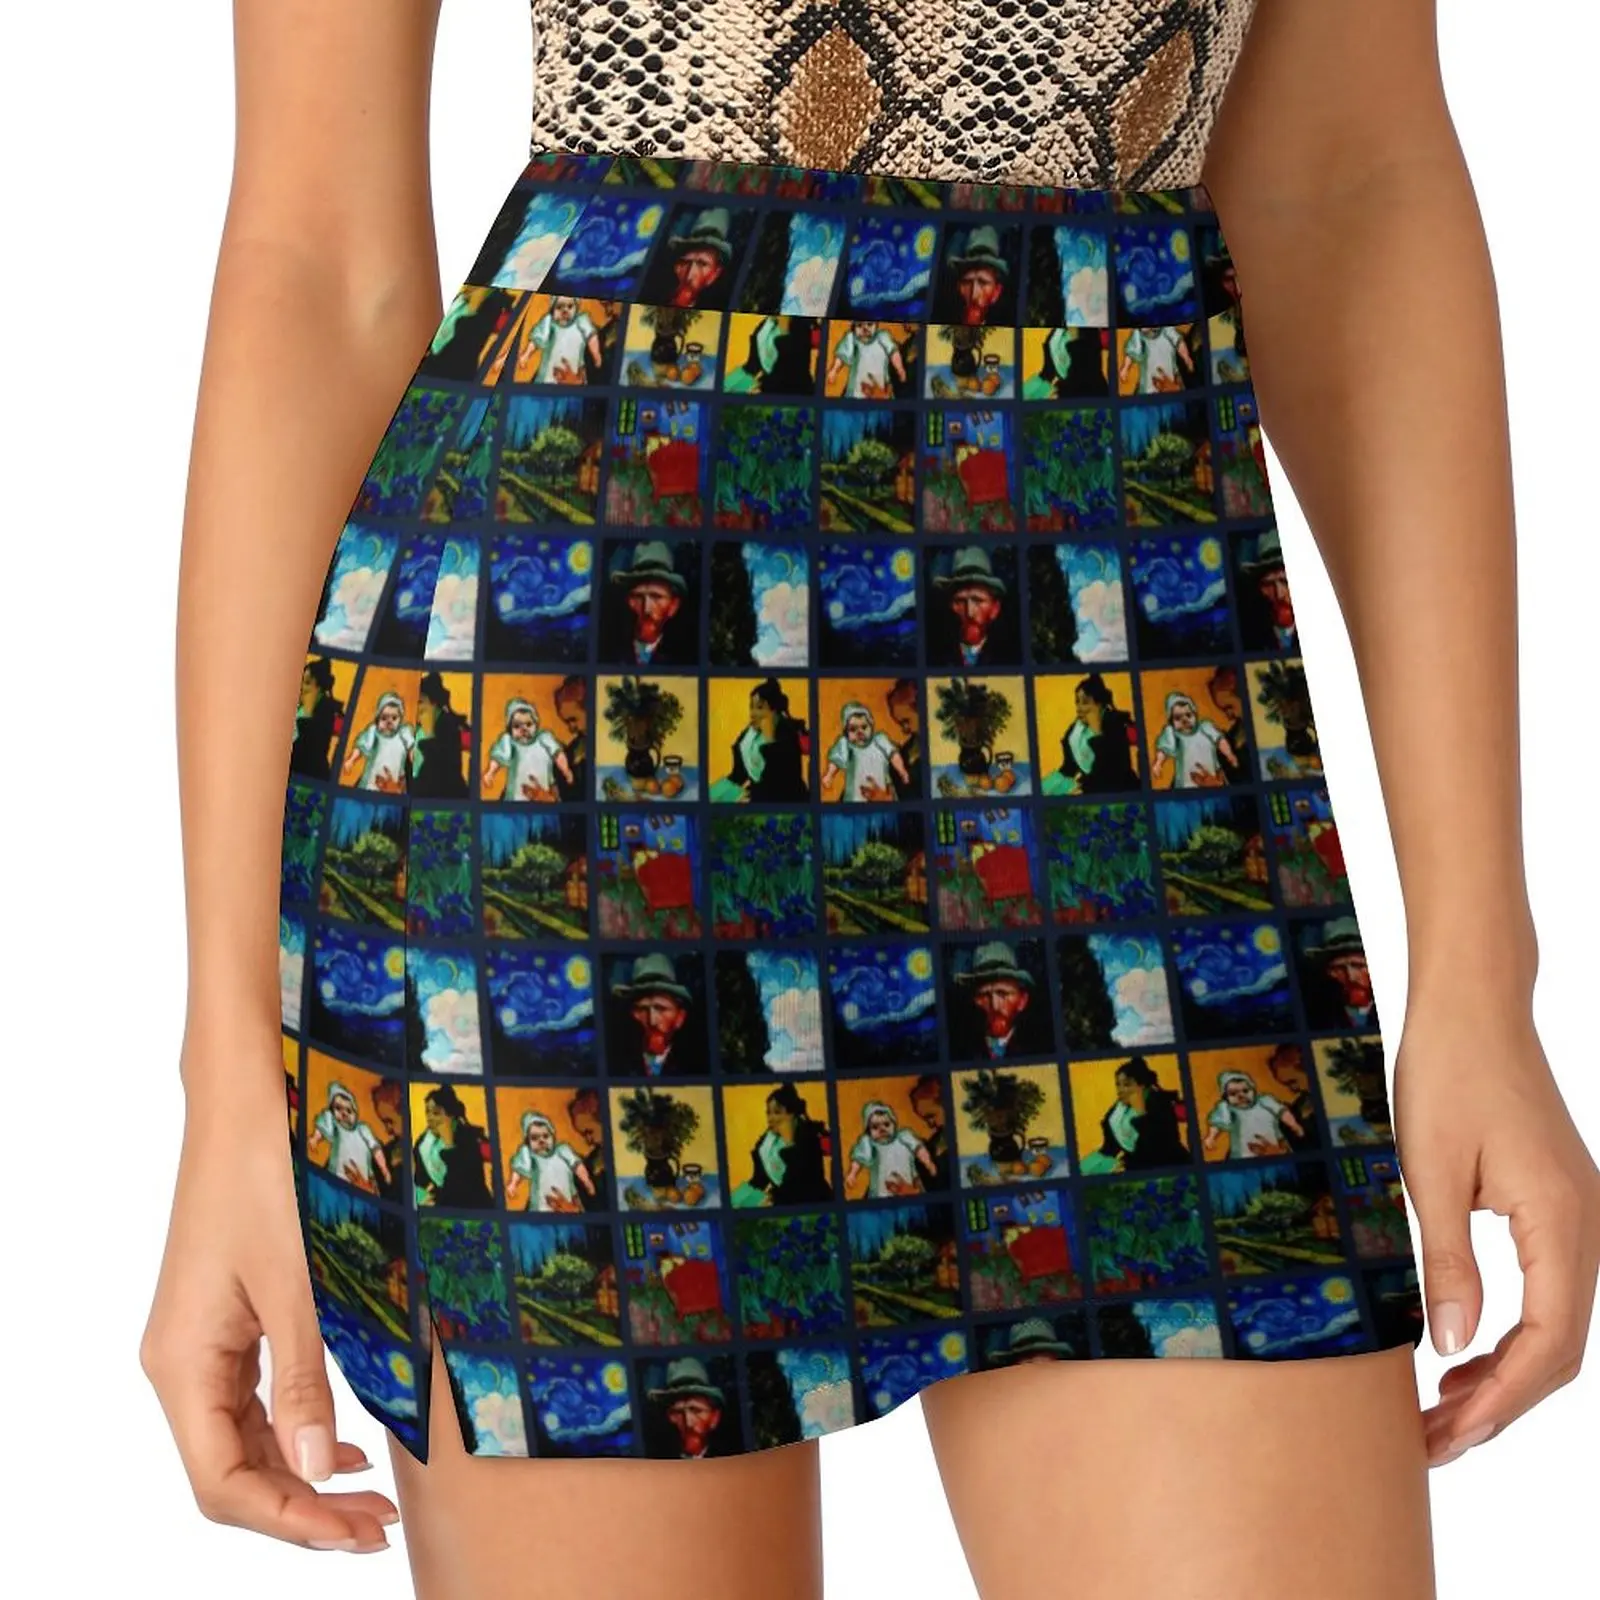 

Van Gogh Skirt Let Us Crazy Cute Mini Skirts Summer High Waist Graphic Street Wear Casual Skirt Big Size 2XL 3XL